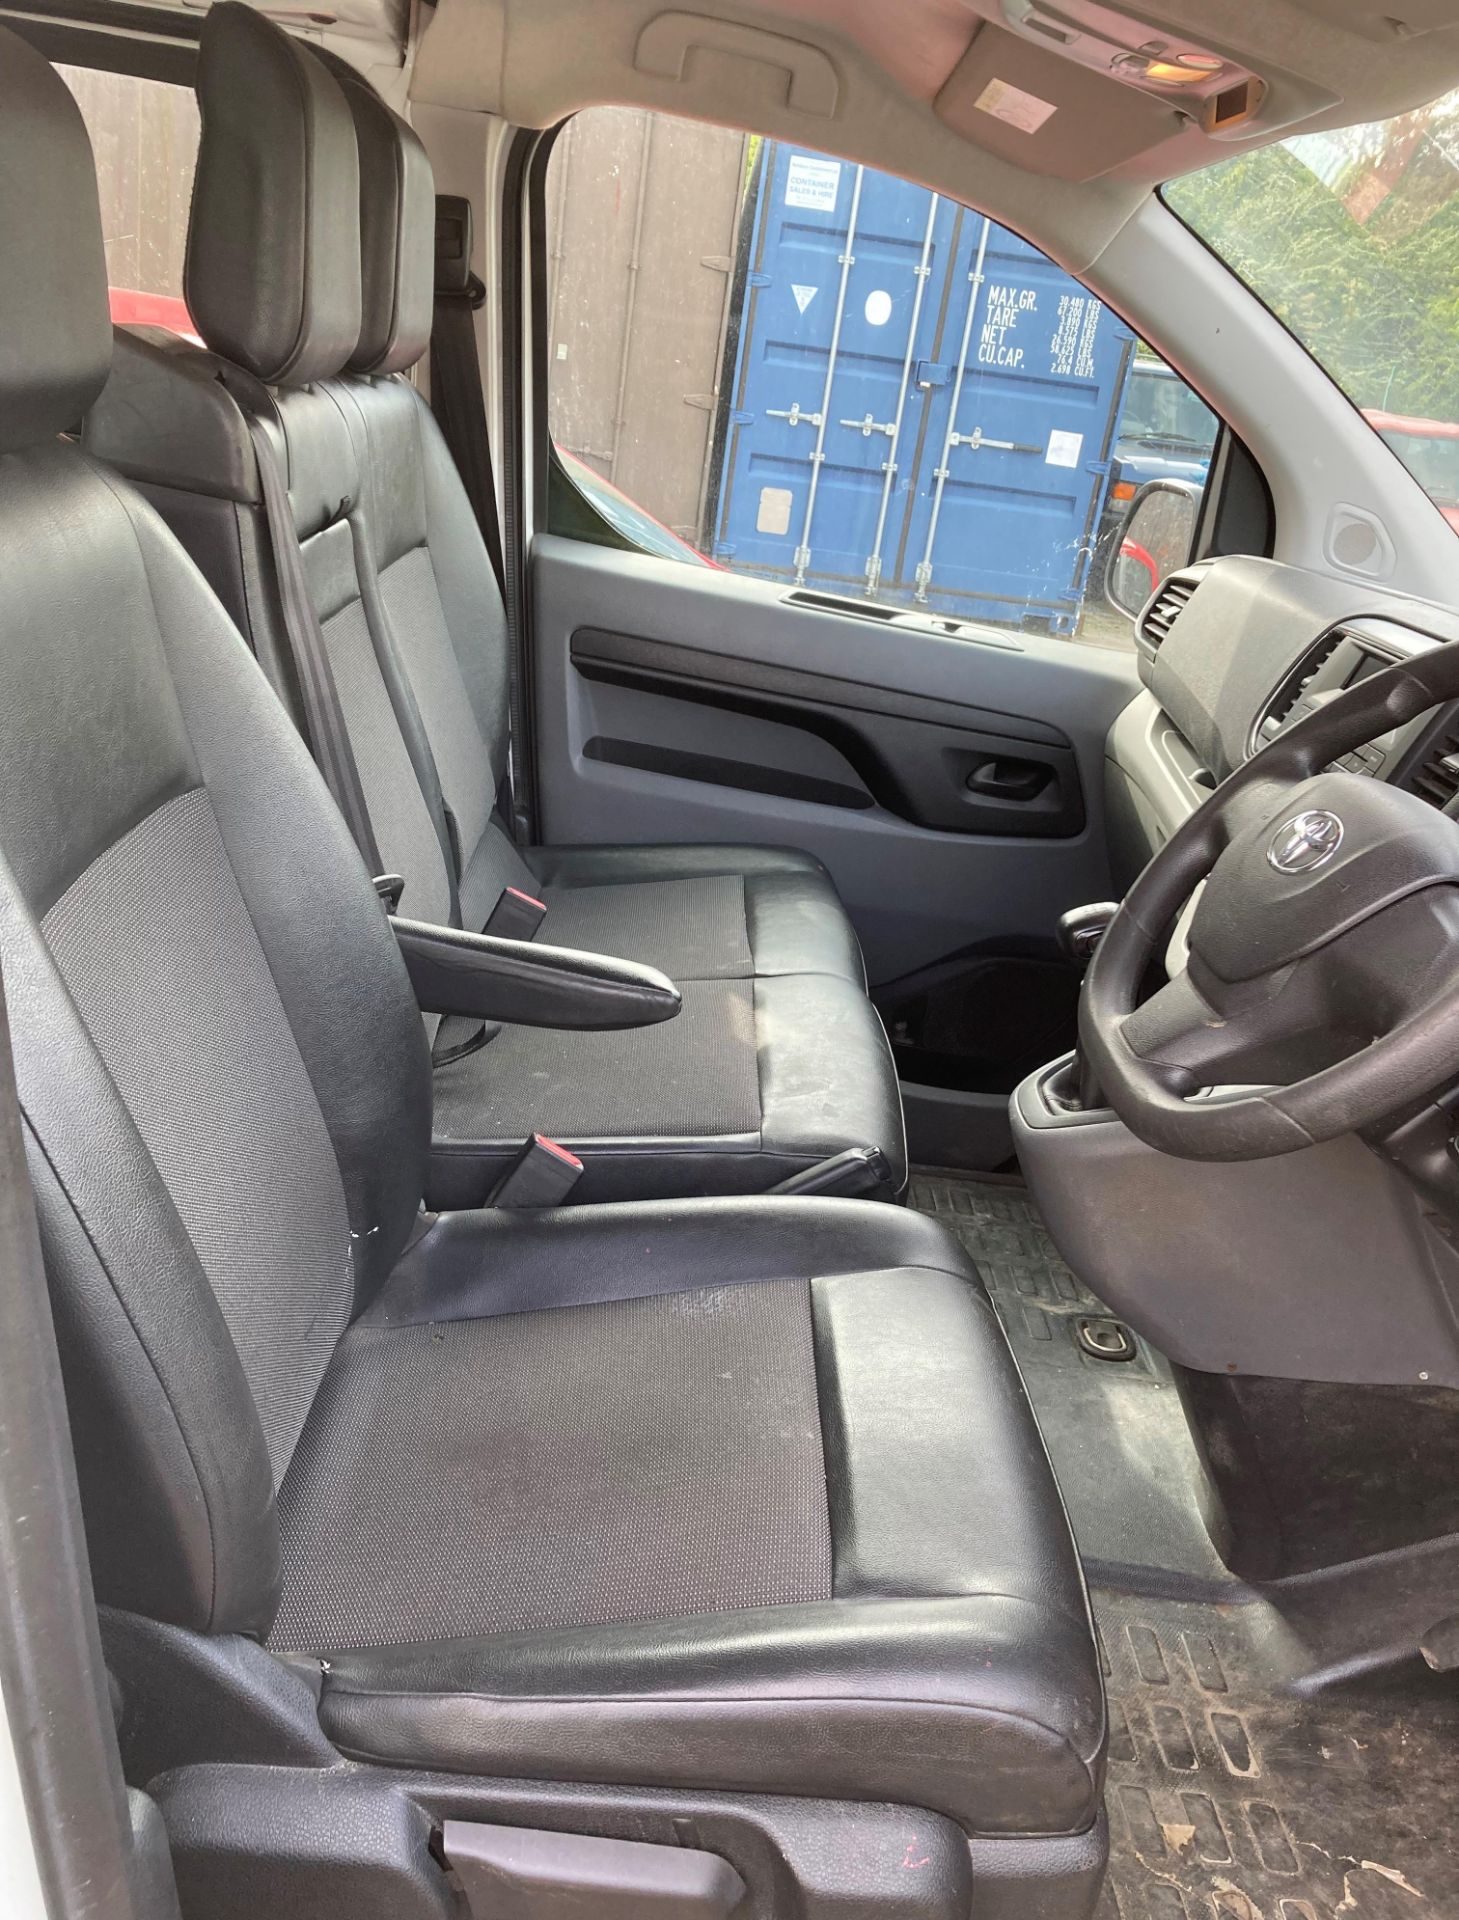 TOYOTA 1.6 PROACE COMFORT CREW CAB TWIN REAR DOOR PANEL VAN - Diesel - White. - Image 9 of 9